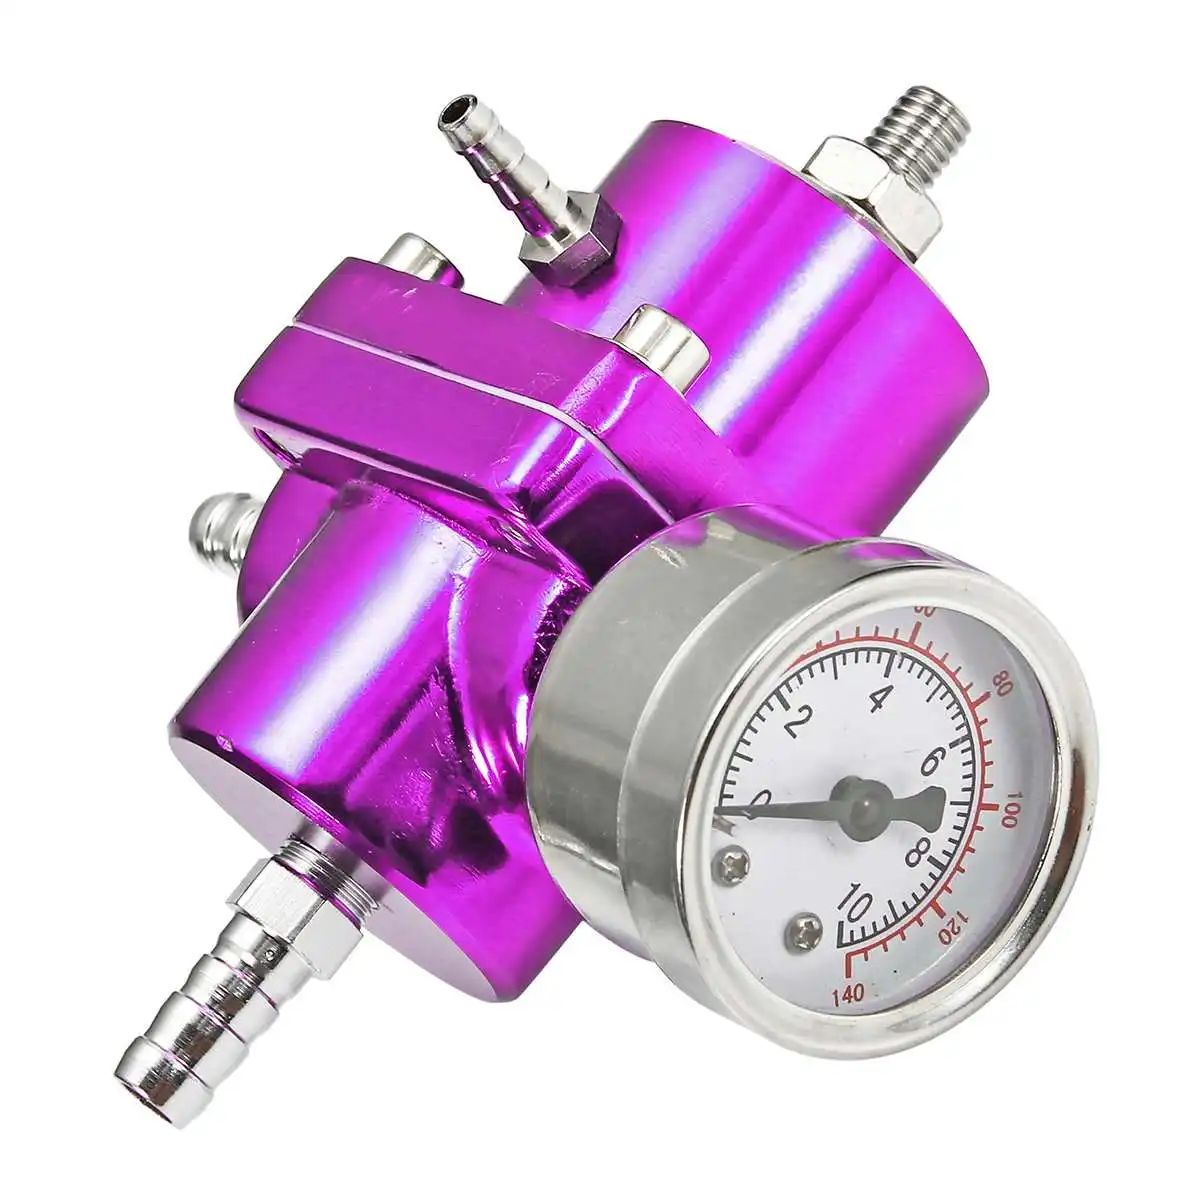 3 Цвета Универсальный алюминиевый регулируемый регулятор давления топлива с 0-140 фунтов/кв. дюйм масляный манометр шланг Комплект Высокая производительность - Цвет: Фиолетовый